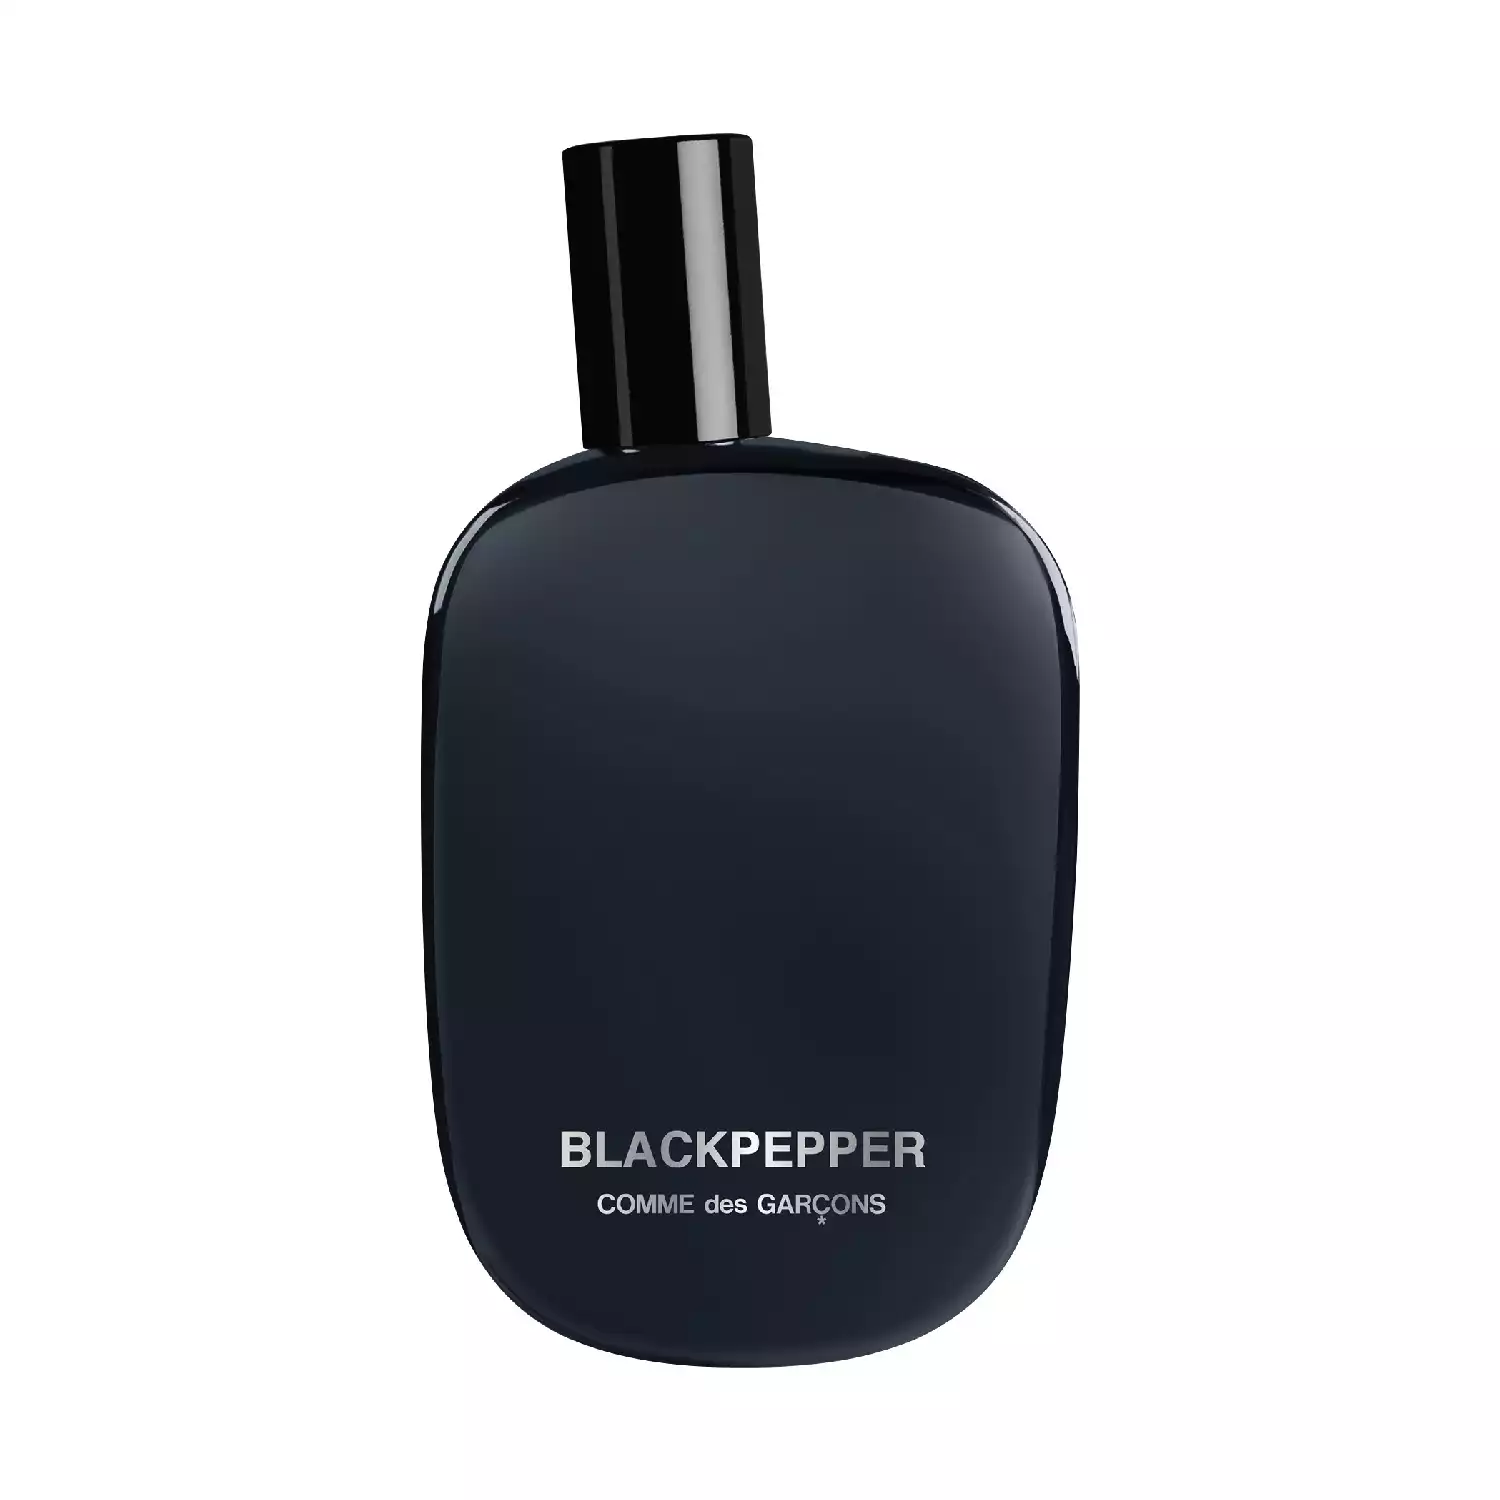 – Blackpepper